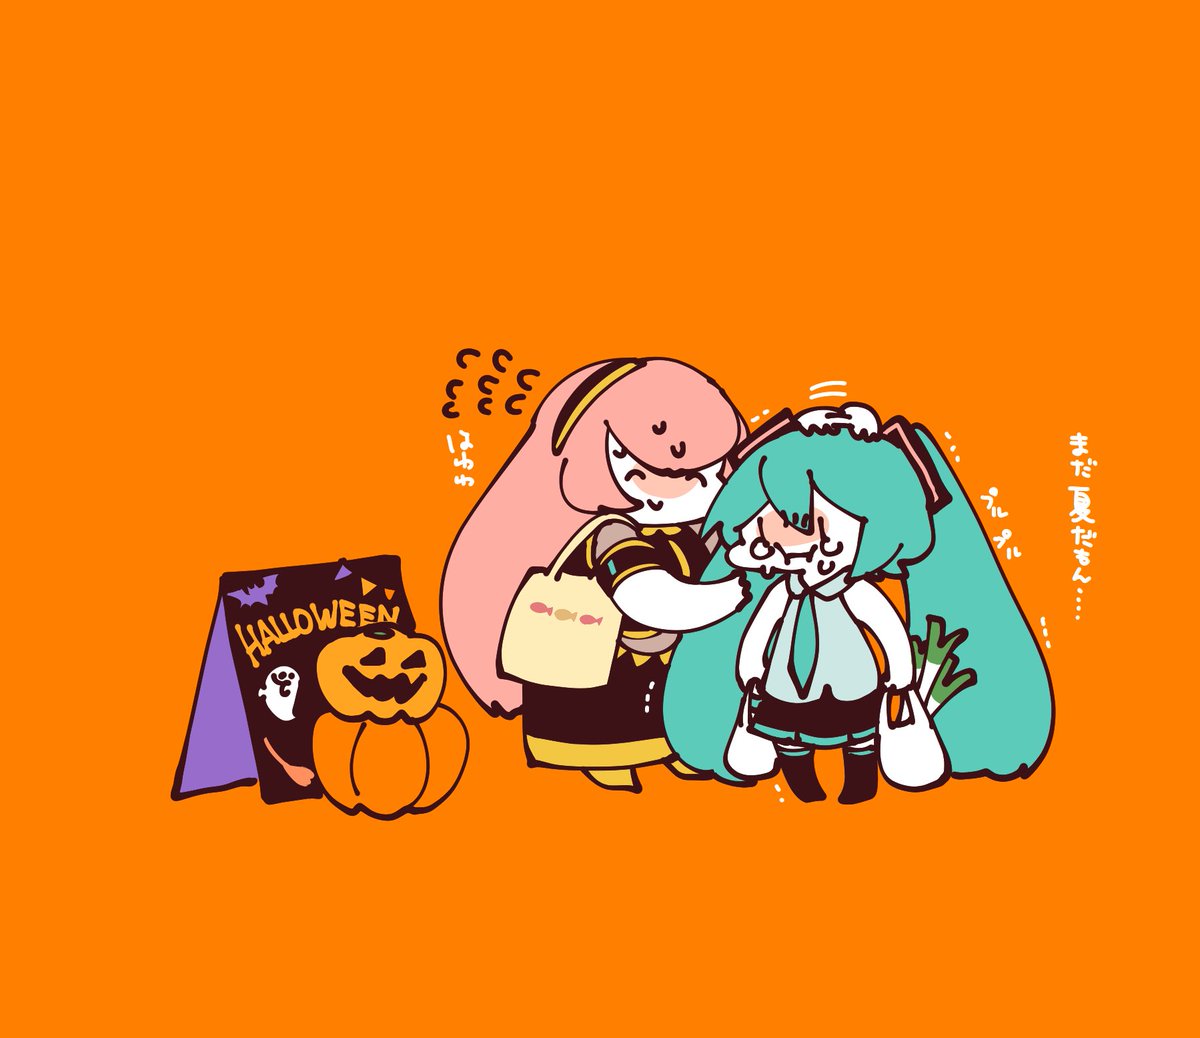 hatsune miku ,megurine luka multiple girls 2girls long hair halloween orange background skirt holding vegetable  illustration images